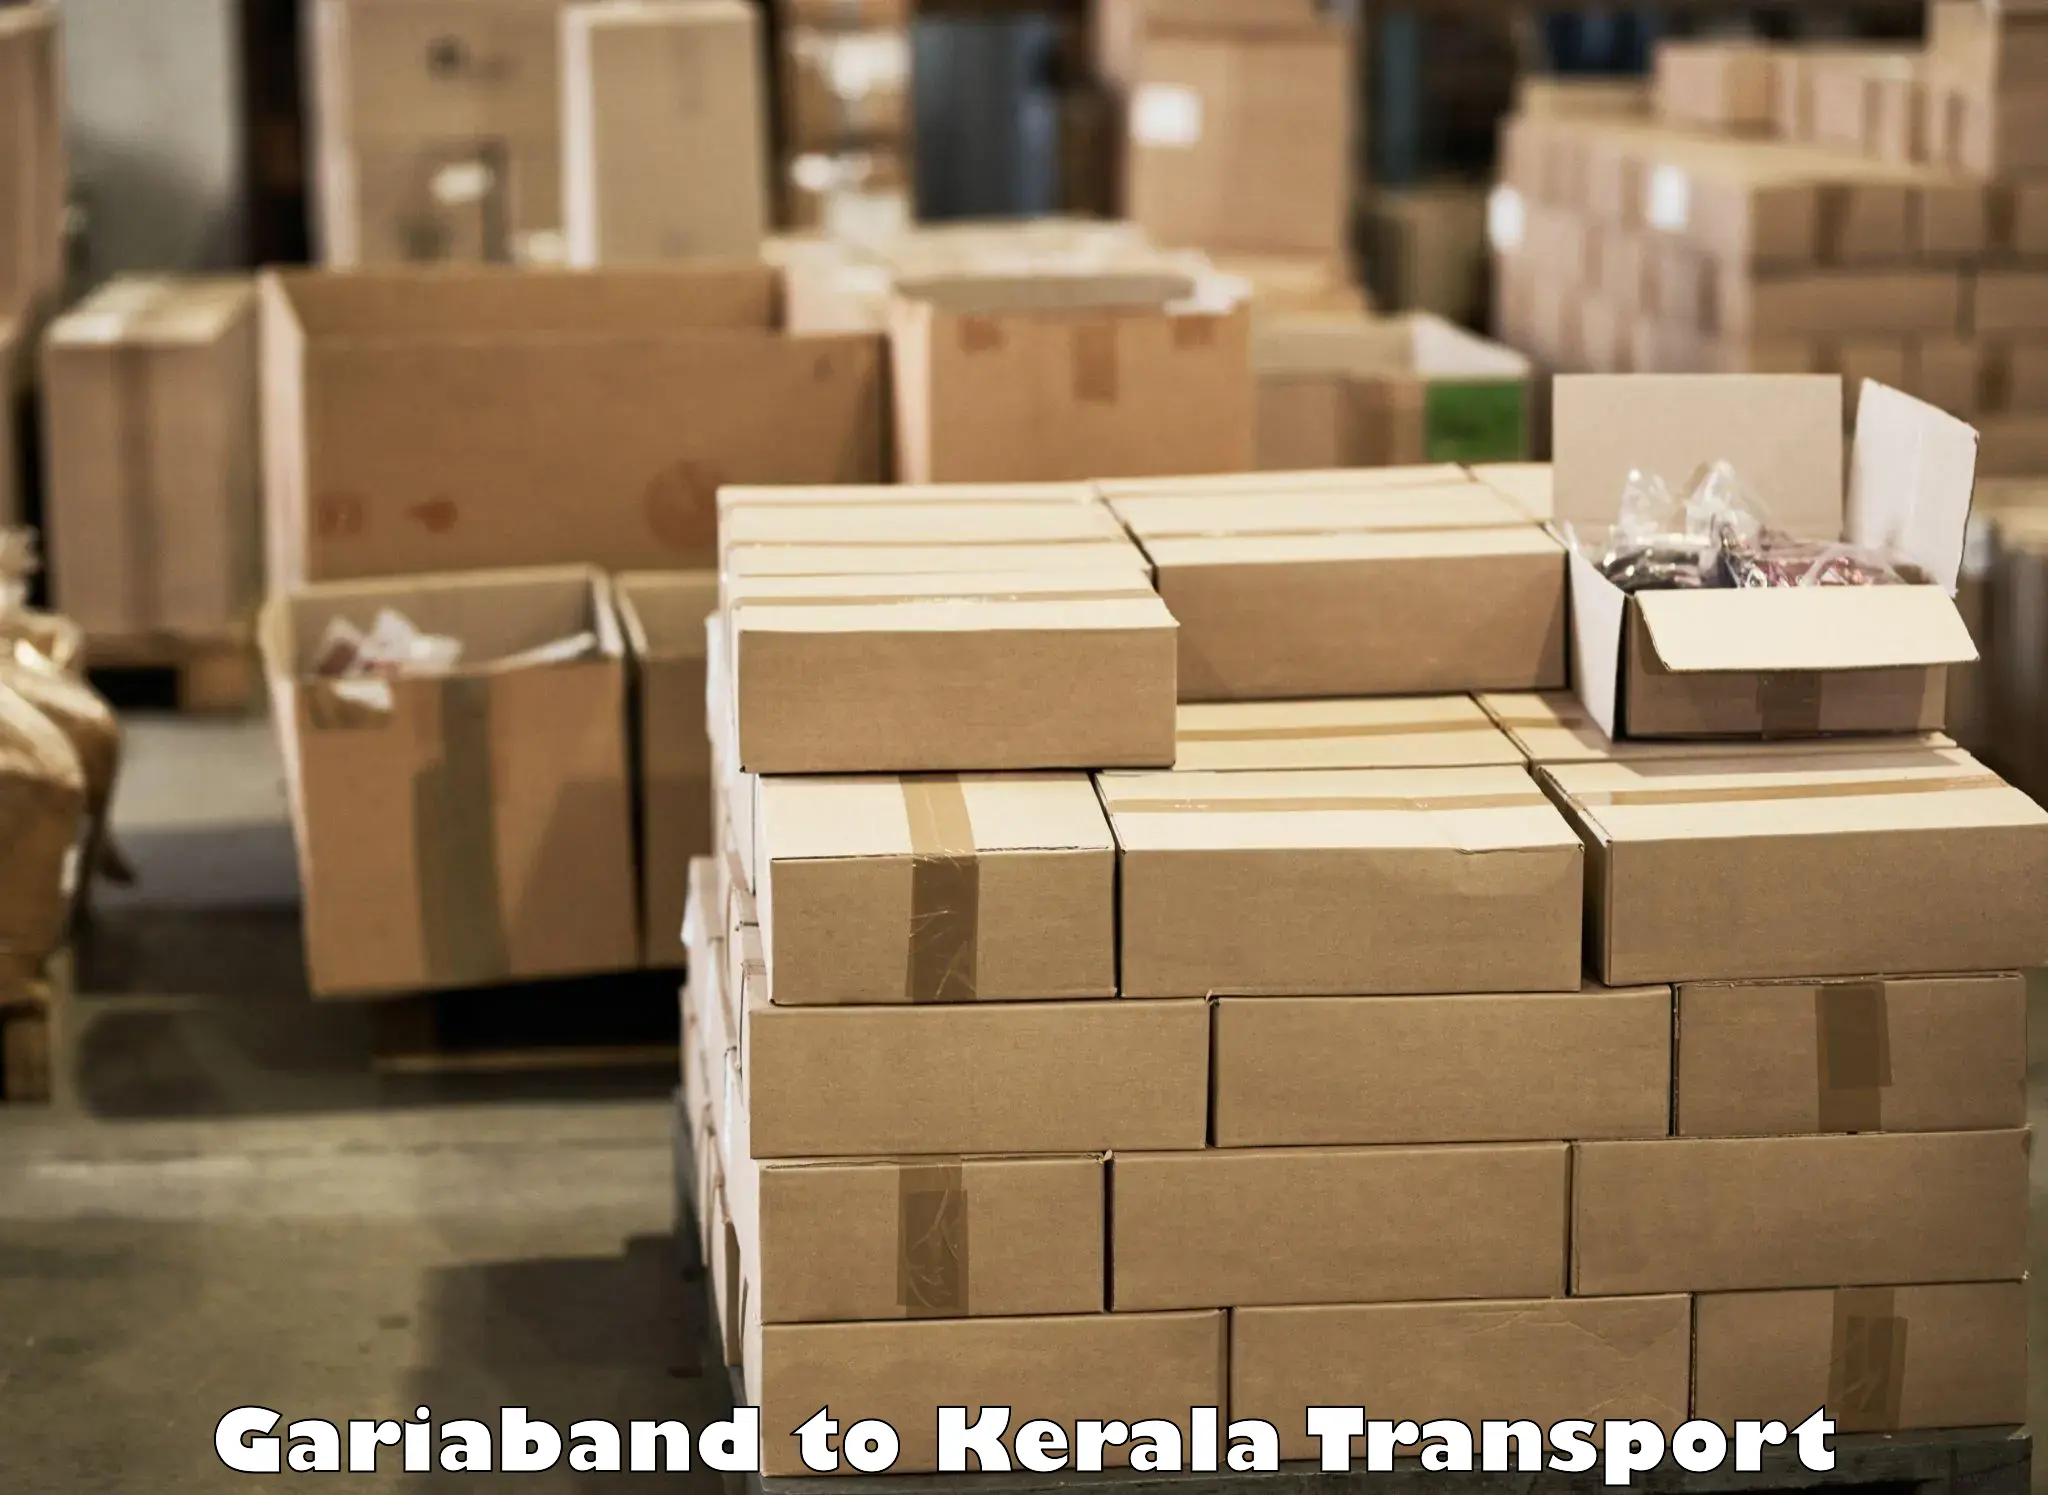 Shipping partner Gariaband to Thiruvananthapuram